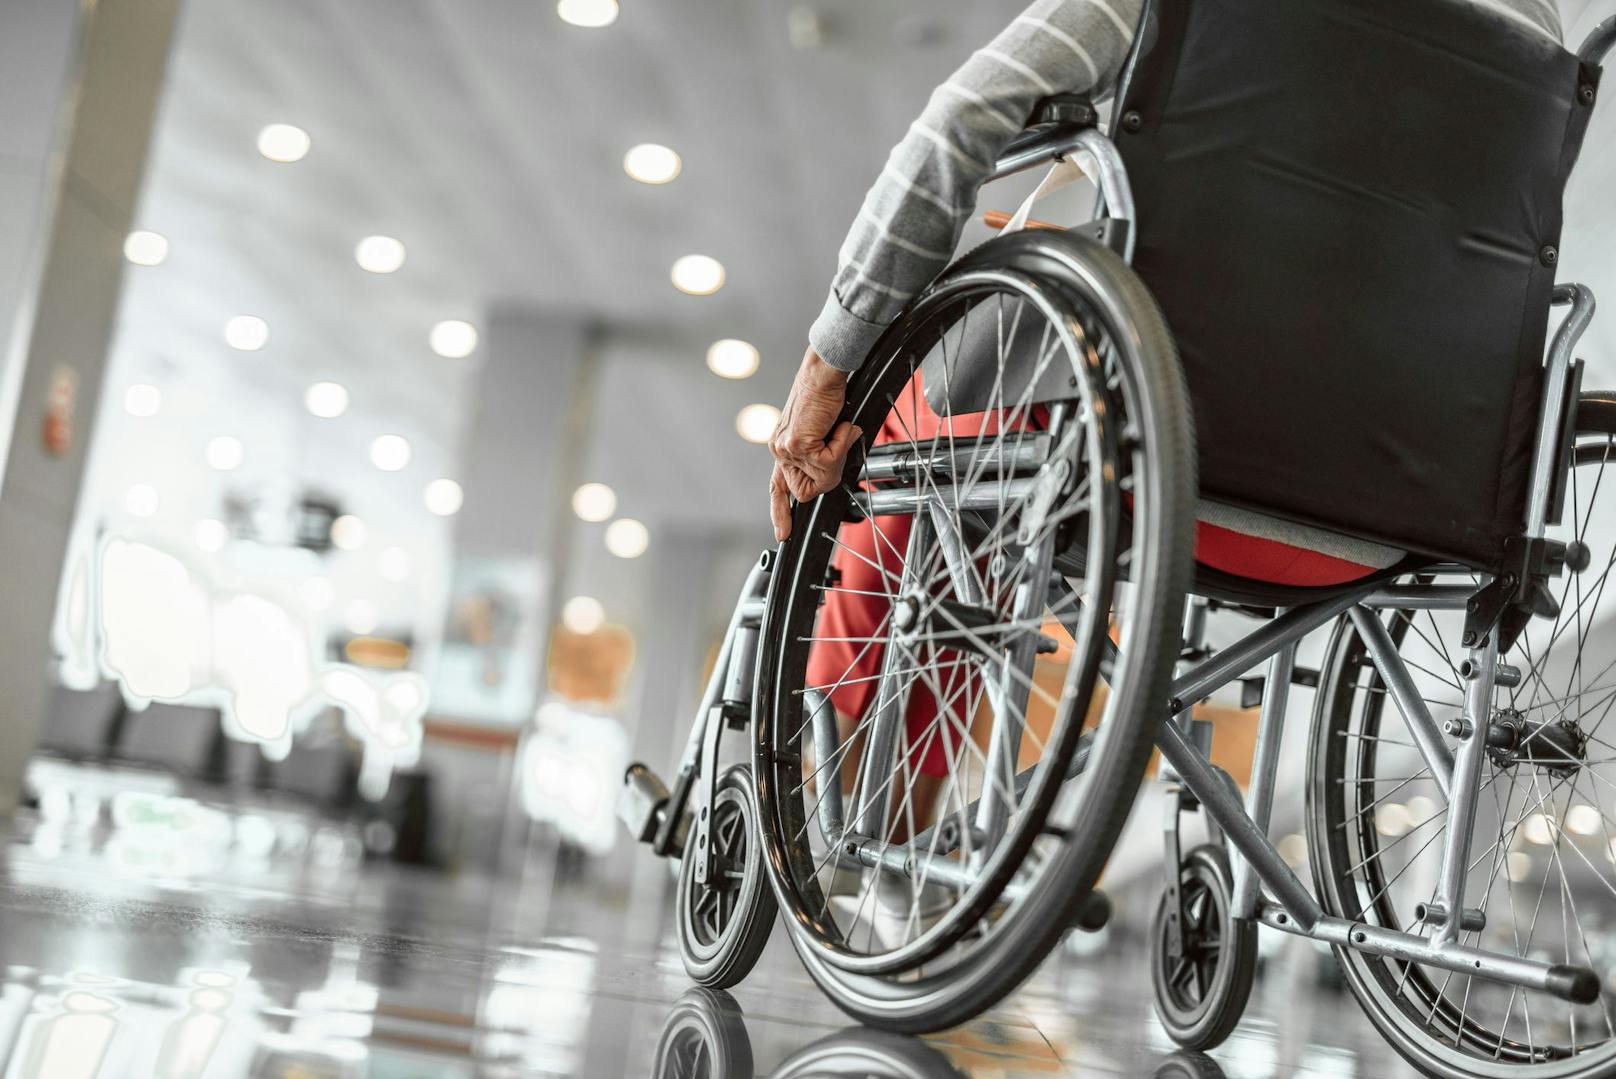 Die körperlichen angriffe waren so heftig, dass die 71-Jährige aus ihrem Rollstuhl fiel.